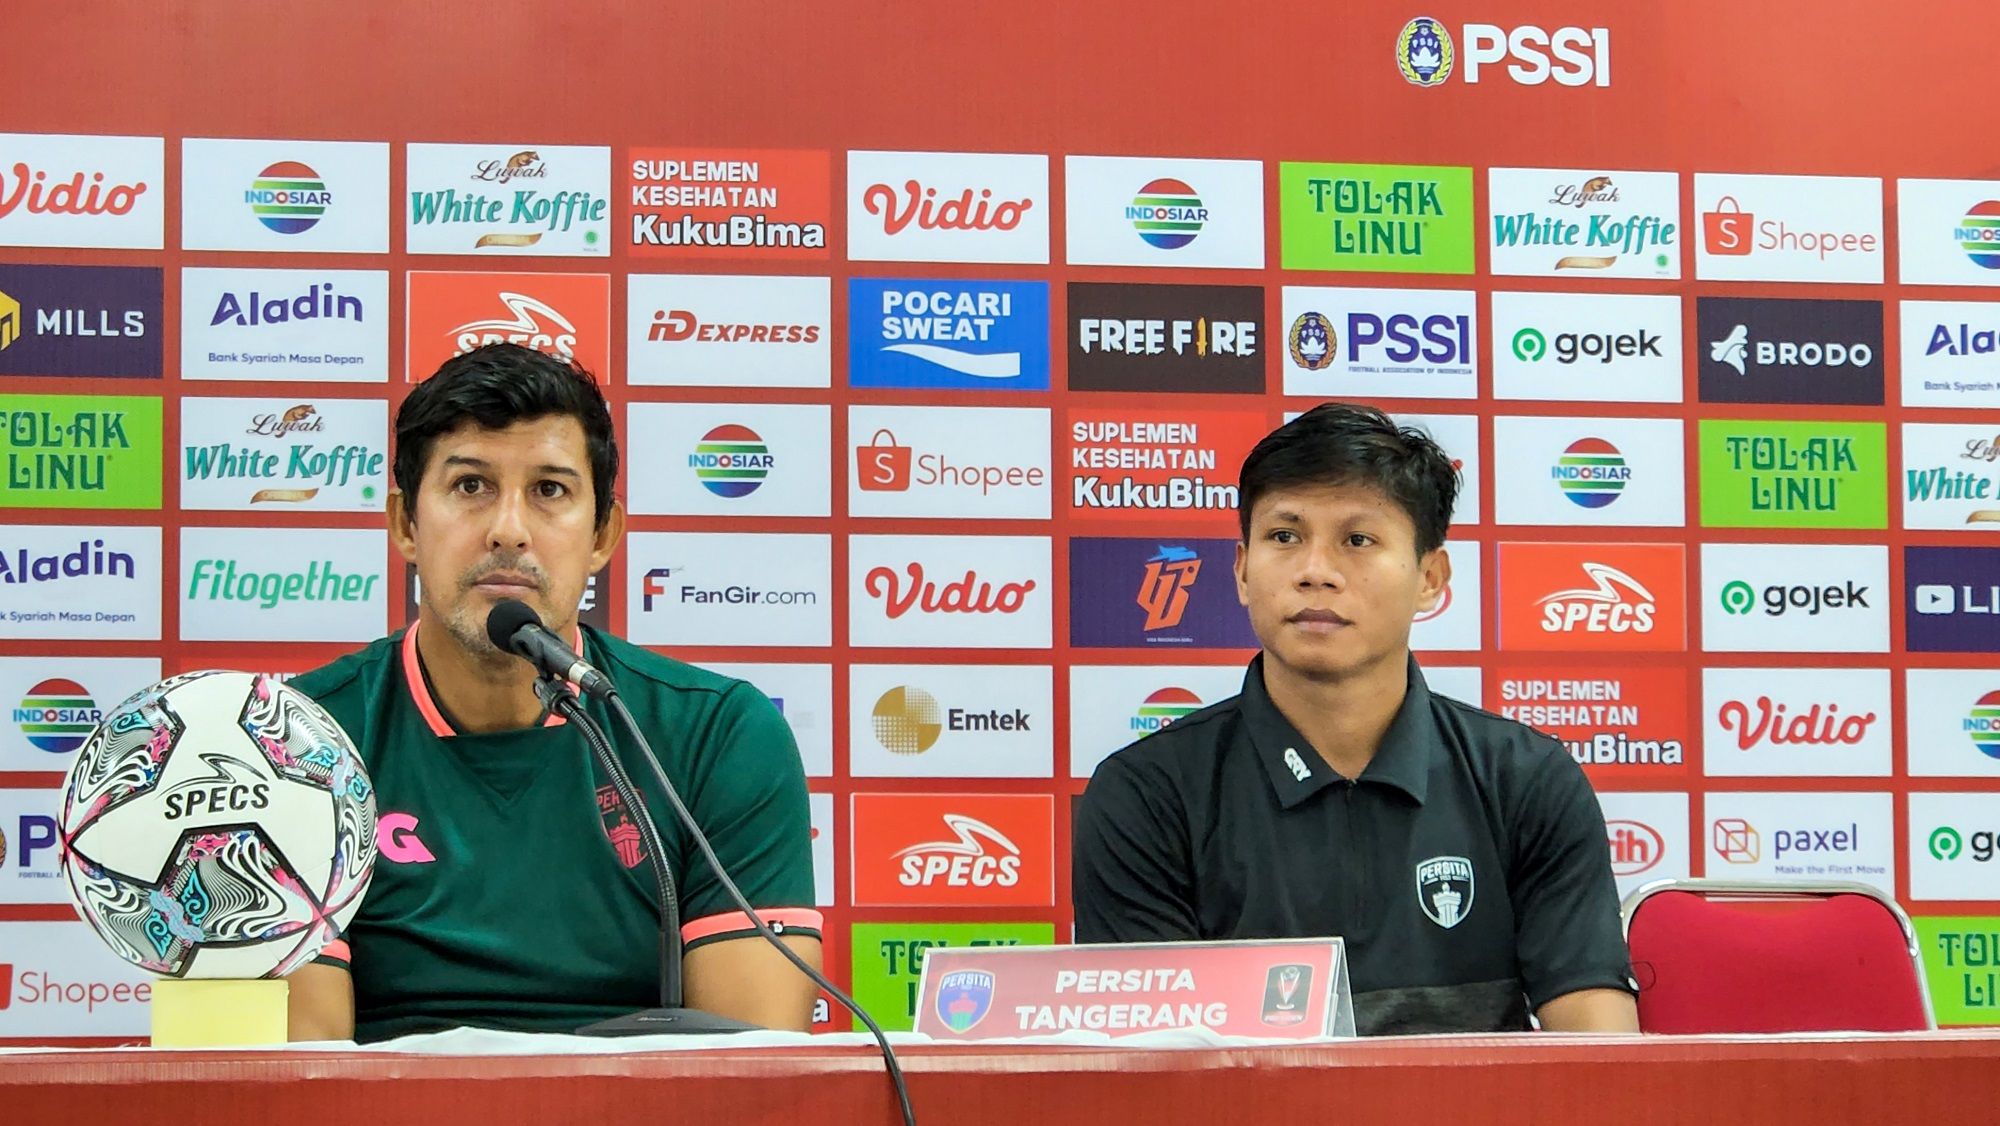 Pelatih Persita, Alfredo Vera, menjawab pertanyaan wartawan dalam sesi konferensi pers pascalaga menghadapi PSS Sleman, Kamis (16/6/2022).